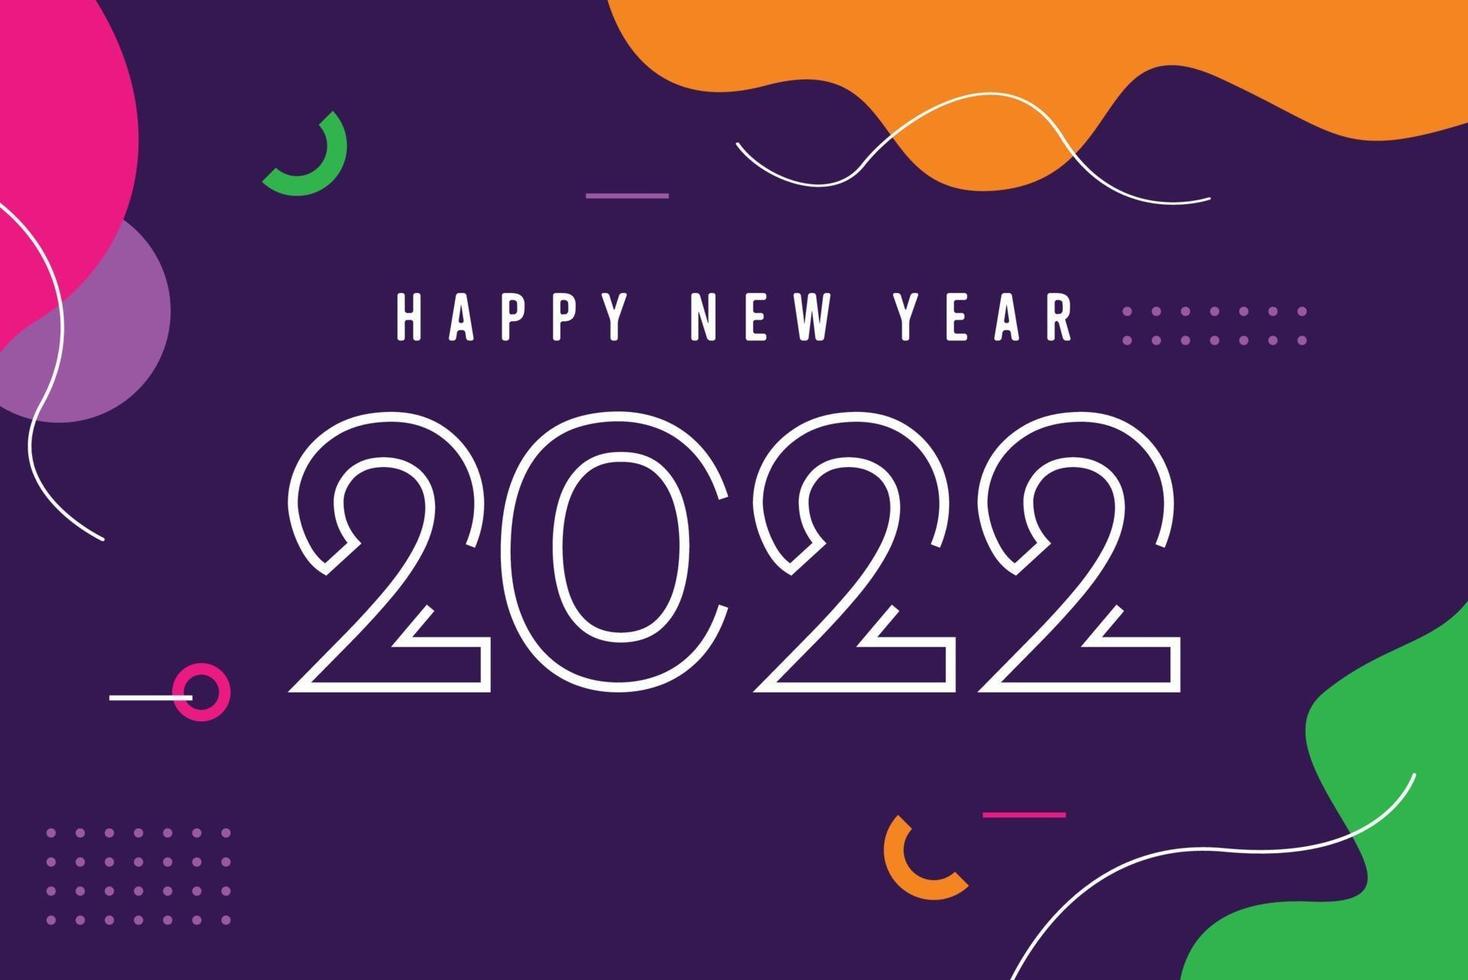 modelo de banner de feliz ano novo 2022. vetor